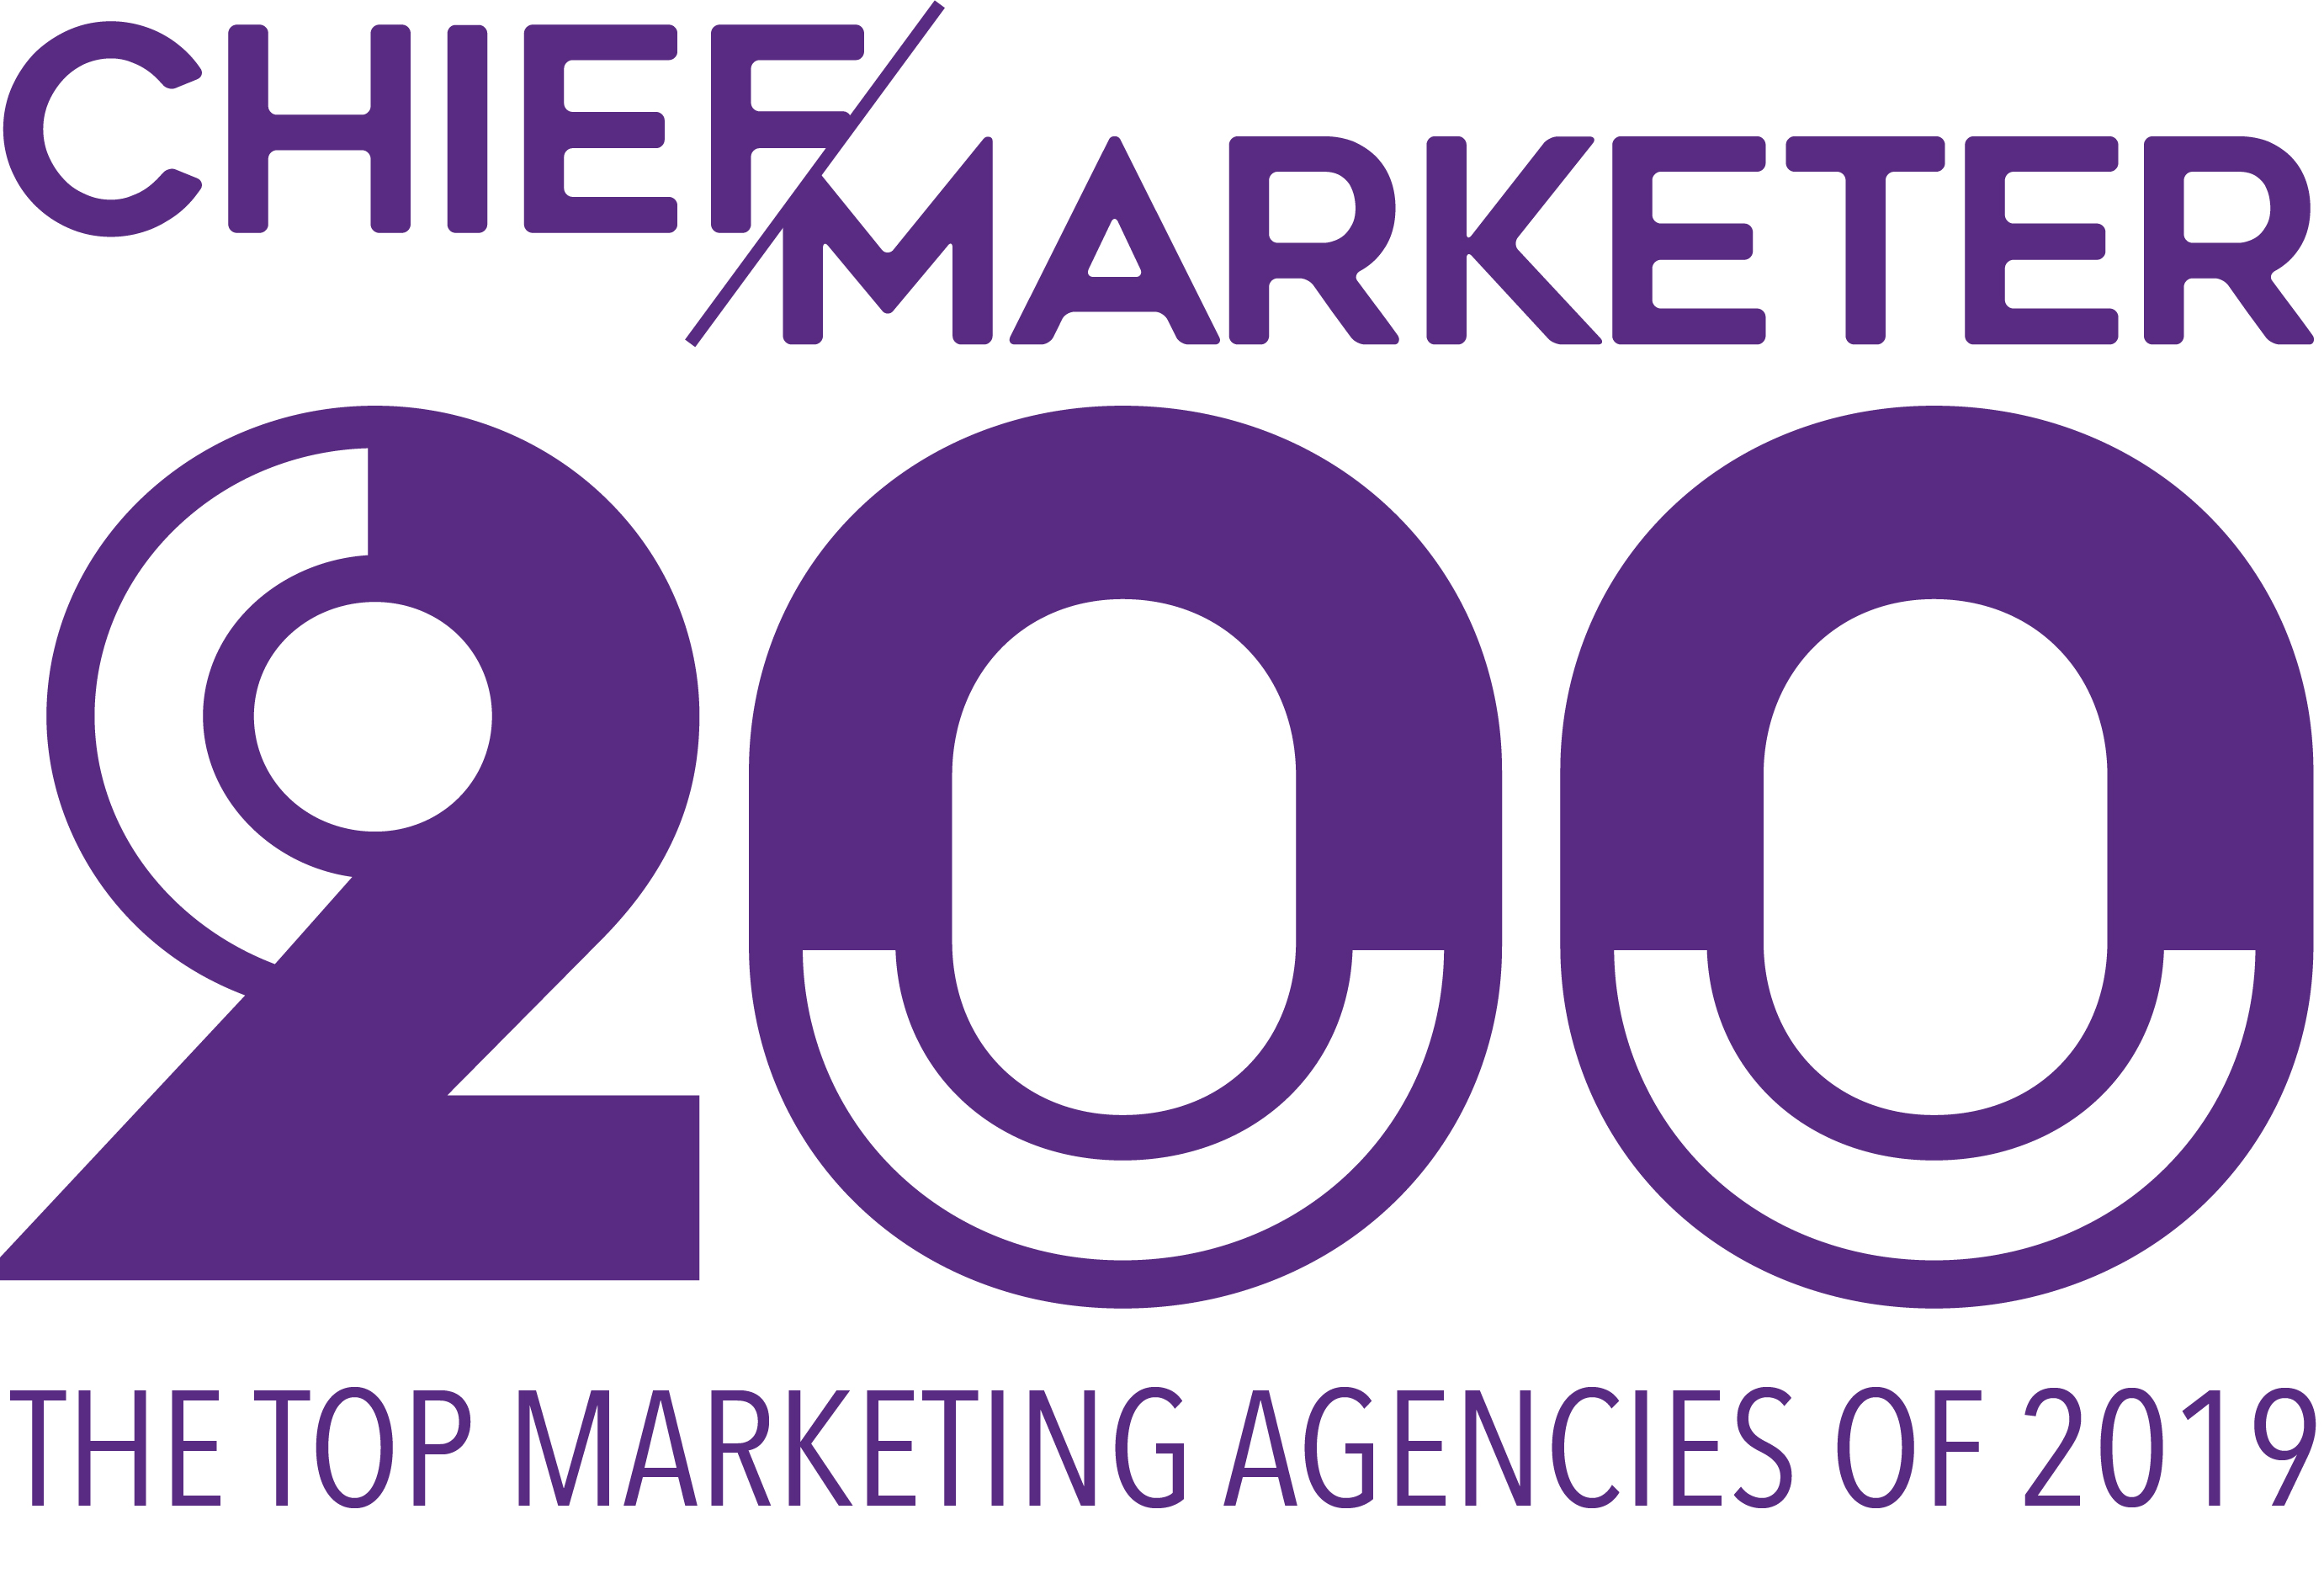 https://cm200-2019.chiefmarketer.com/wp-content/themes/cm200-2019/images/CM200_2019_Logo_Purple.jpg